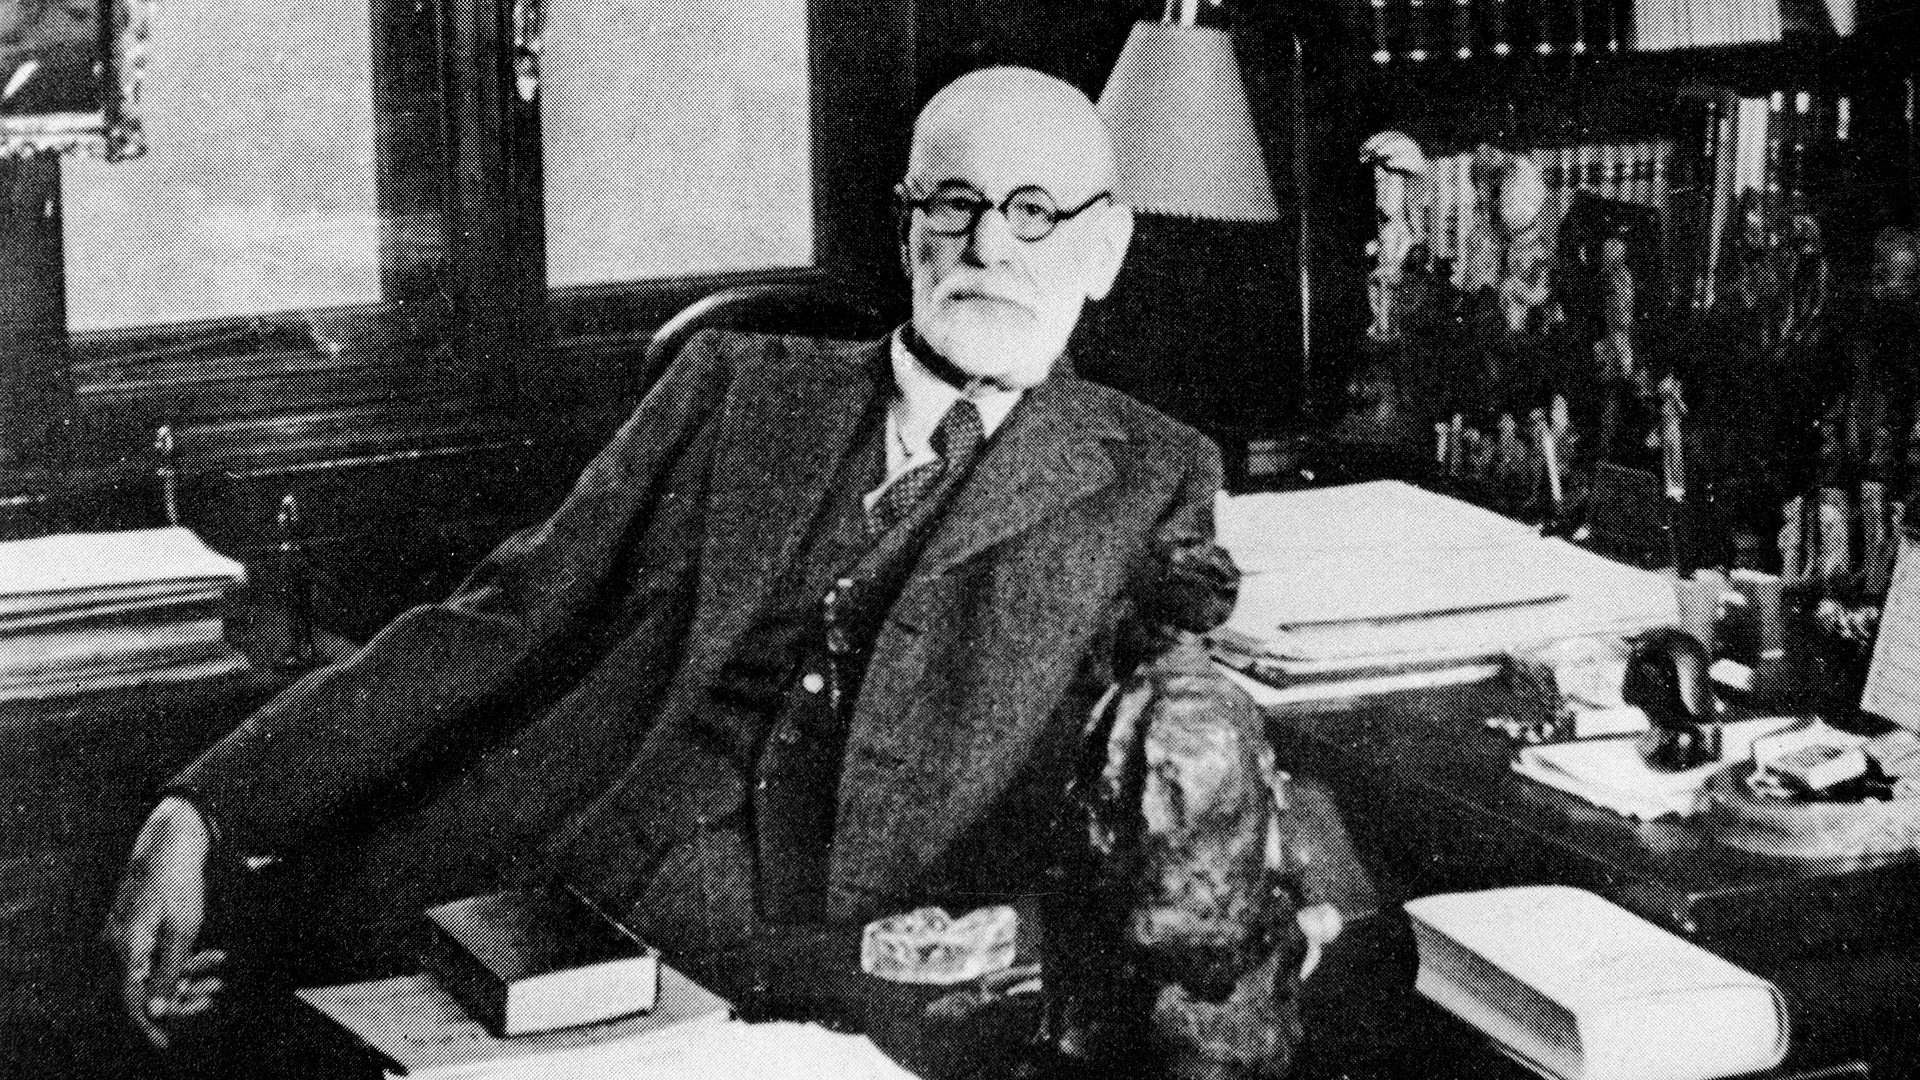 La mañana del viernes 22 de septiembre de 1939, el doctor Schur le inyectó la primera dosis de morfina. Once horas después la siguiente. Las últimas palabras de Freud antes de entrar en coma fueron: “Es absurdo, esto es absurdo…”. Falleció a las 3 de la madrugada del sábado 23 (Authenticated News/Getty Images)